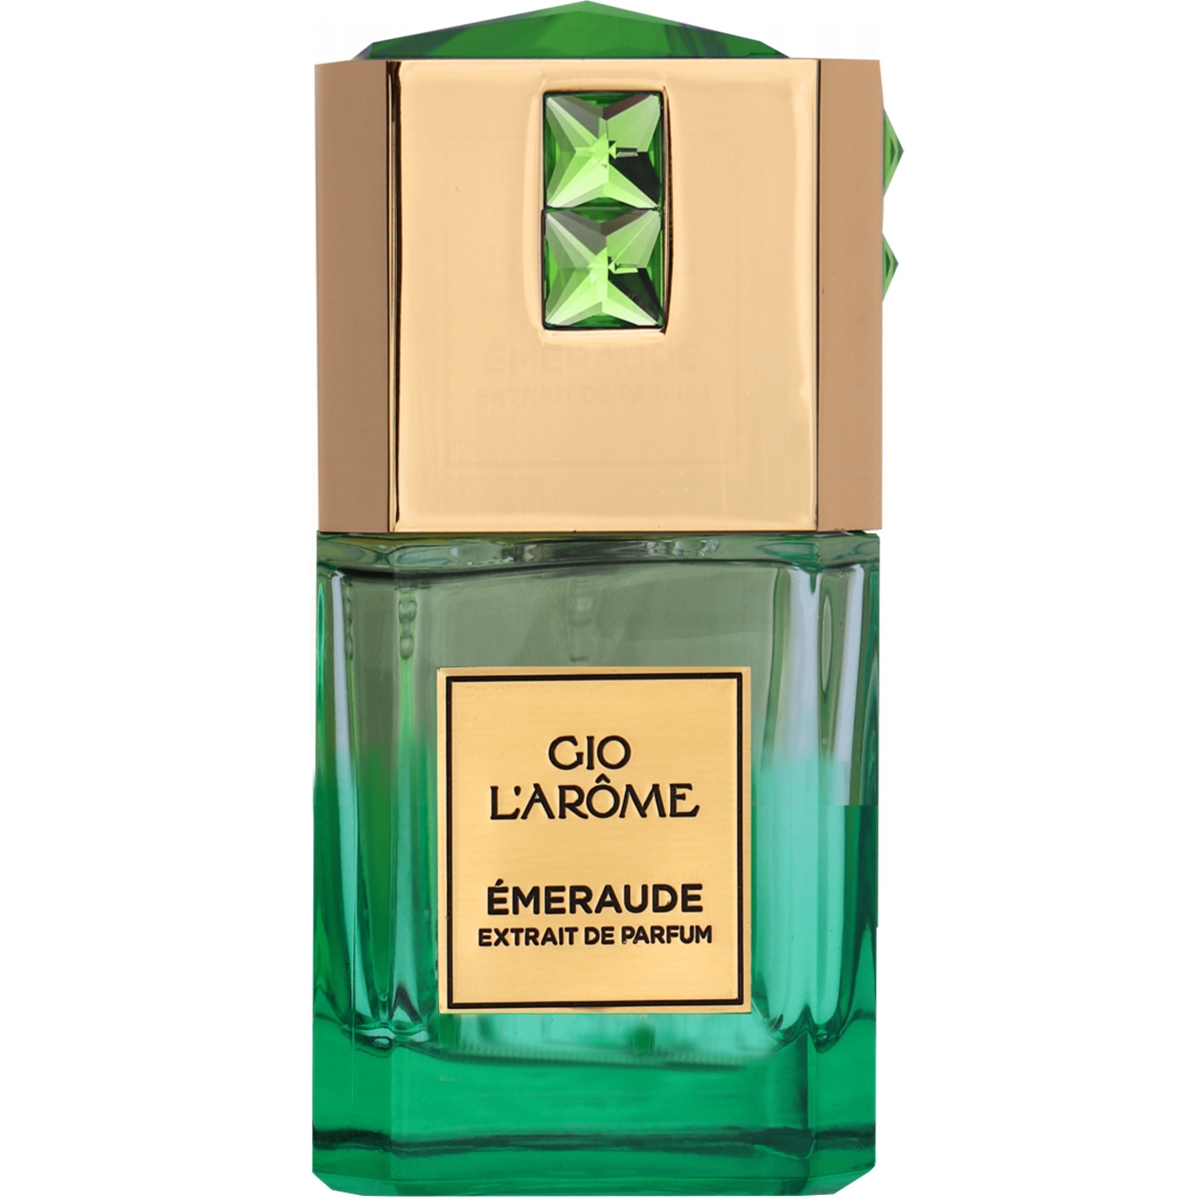 Émeraude Gio L'Arome Perfumes, Unisex Perfumes, Arada Perfumes